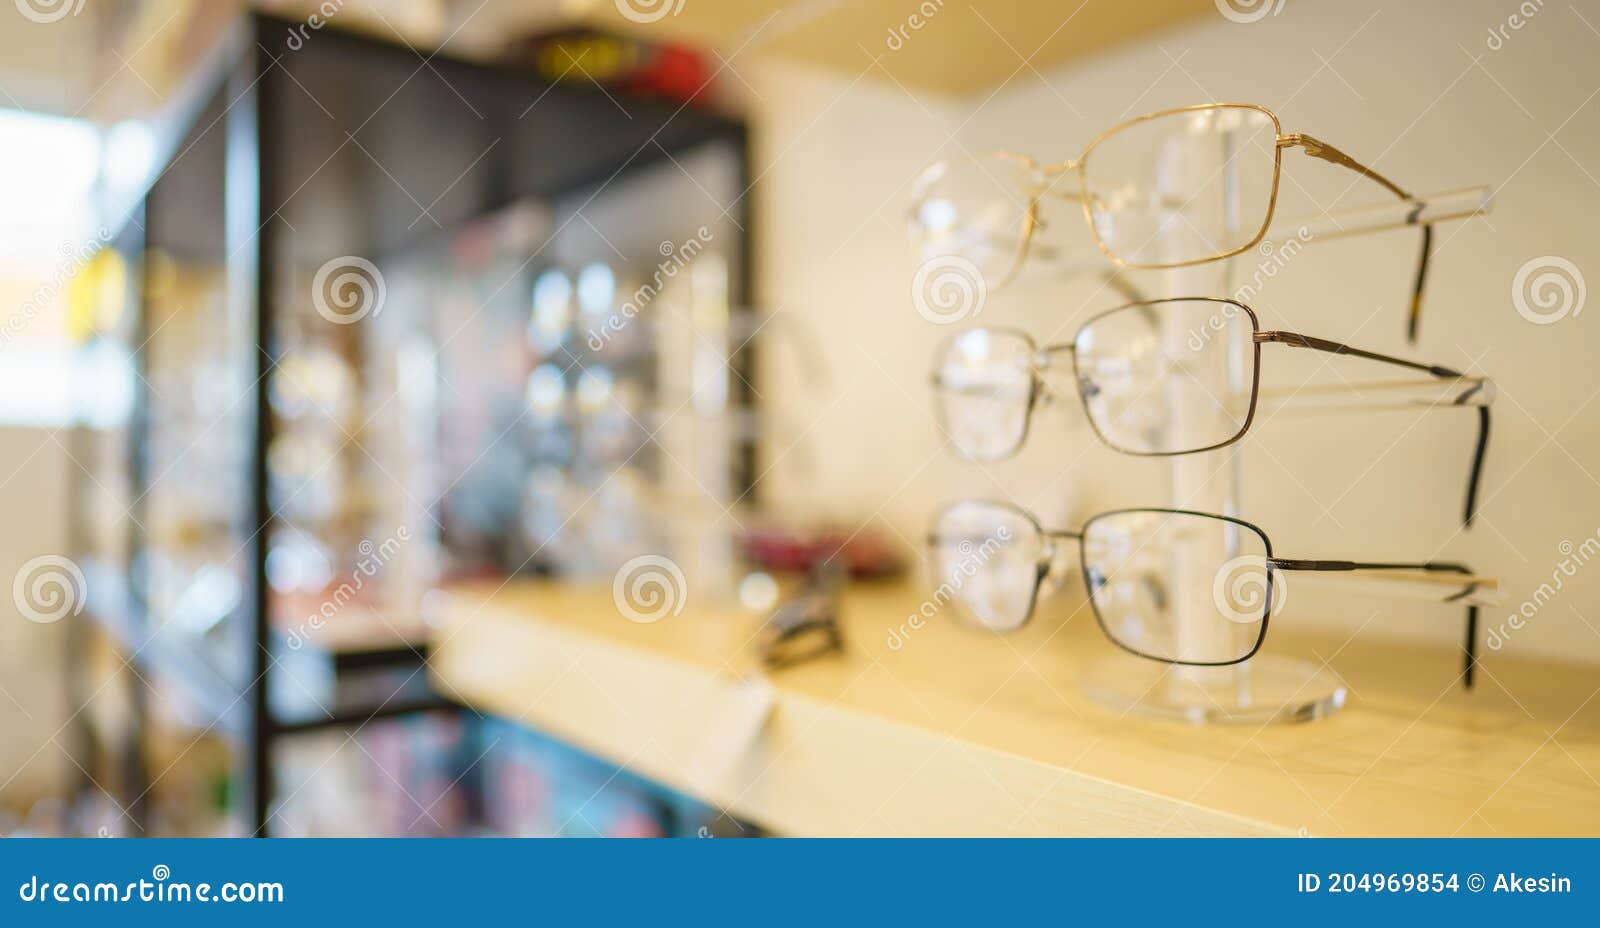 Pantalla De Anteojos En Soporte De Gafas En Estantes En Tienda